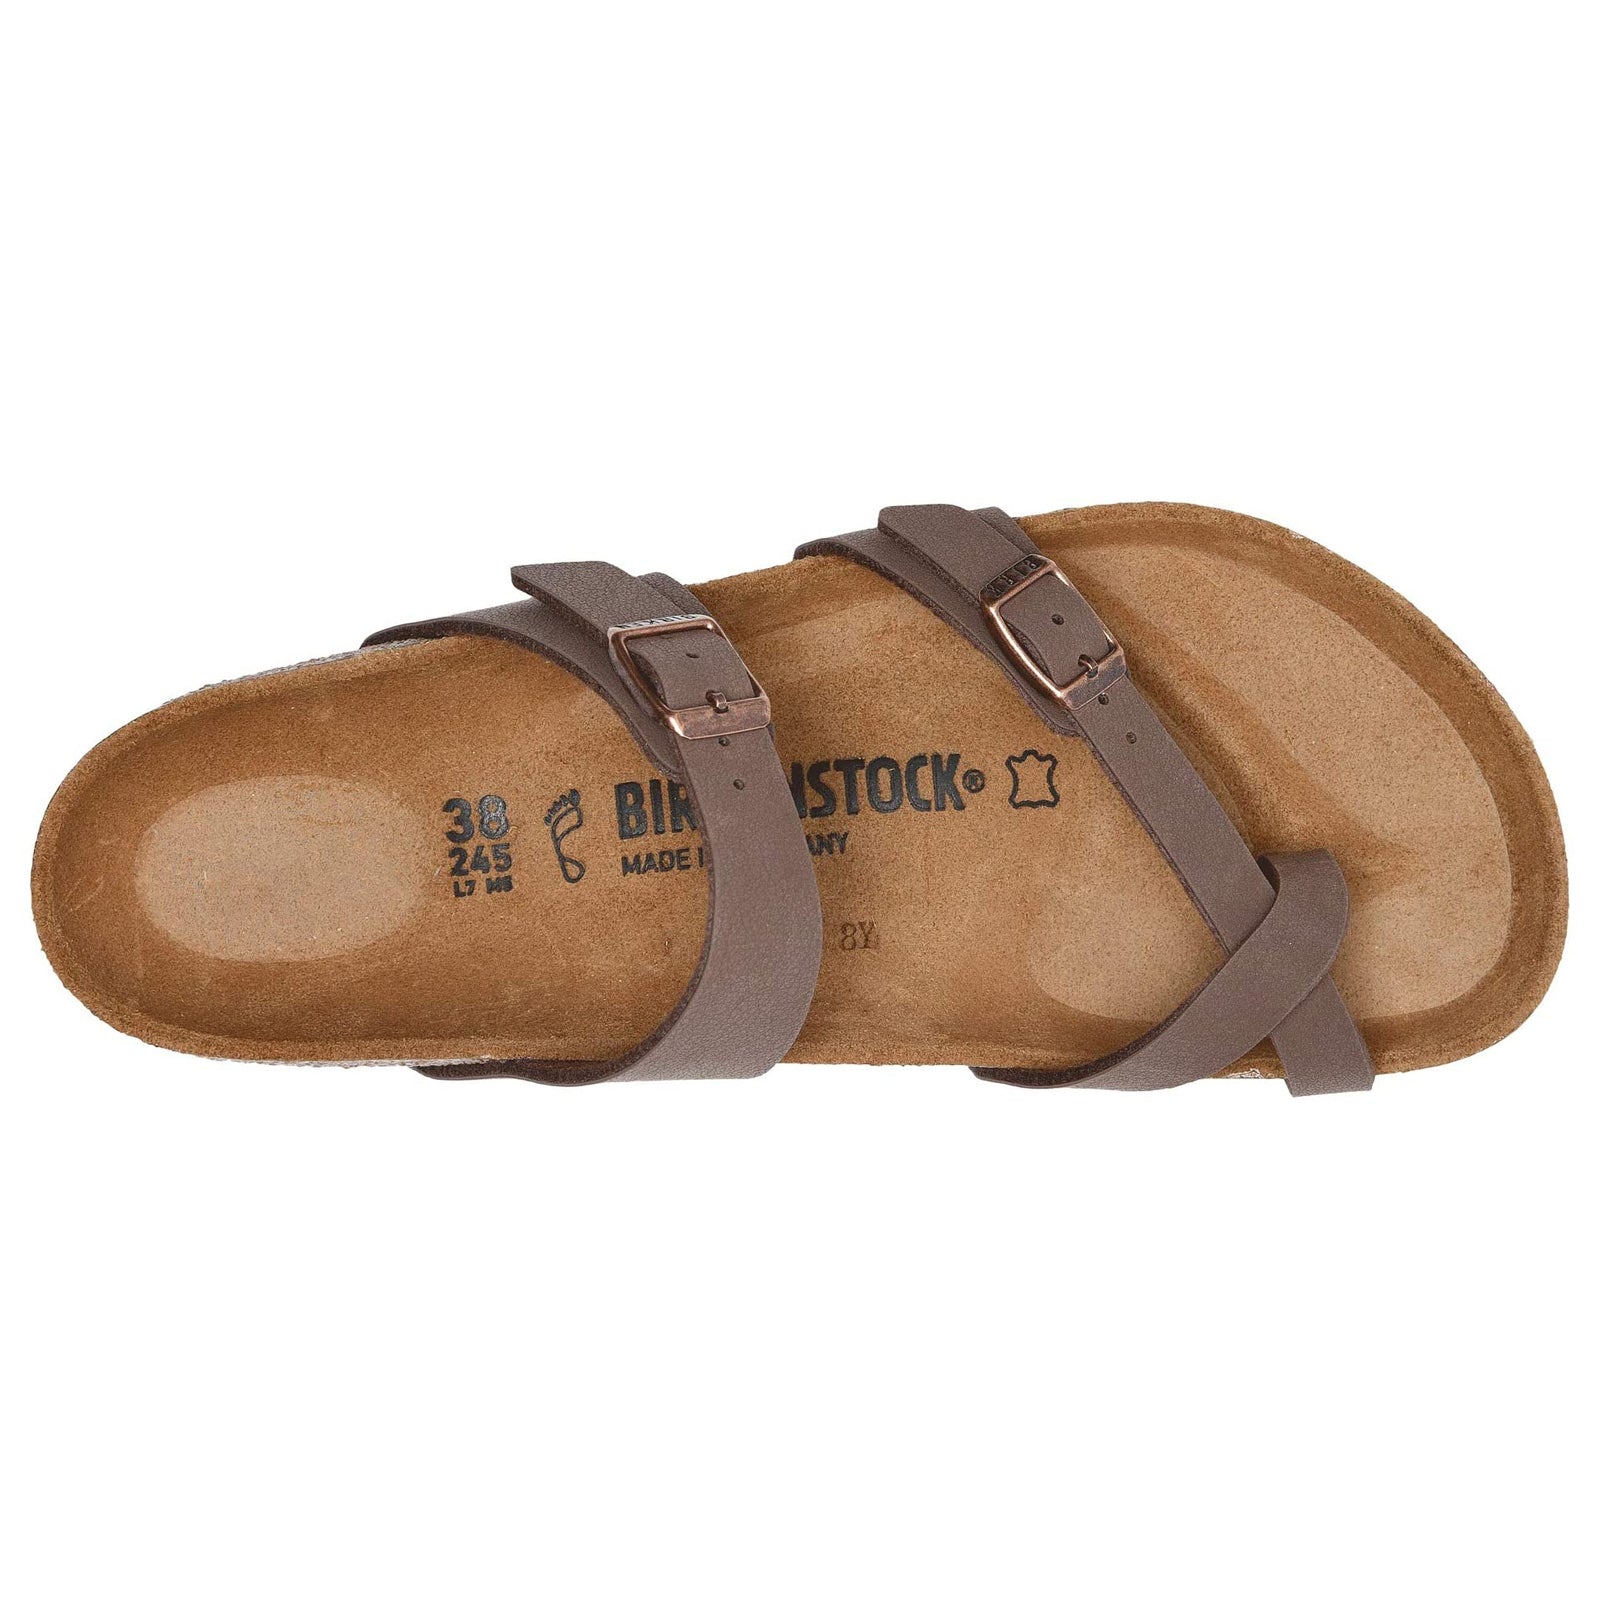 Birkenstock Mayari Brown Womens Sandals - 071061#color_mocca